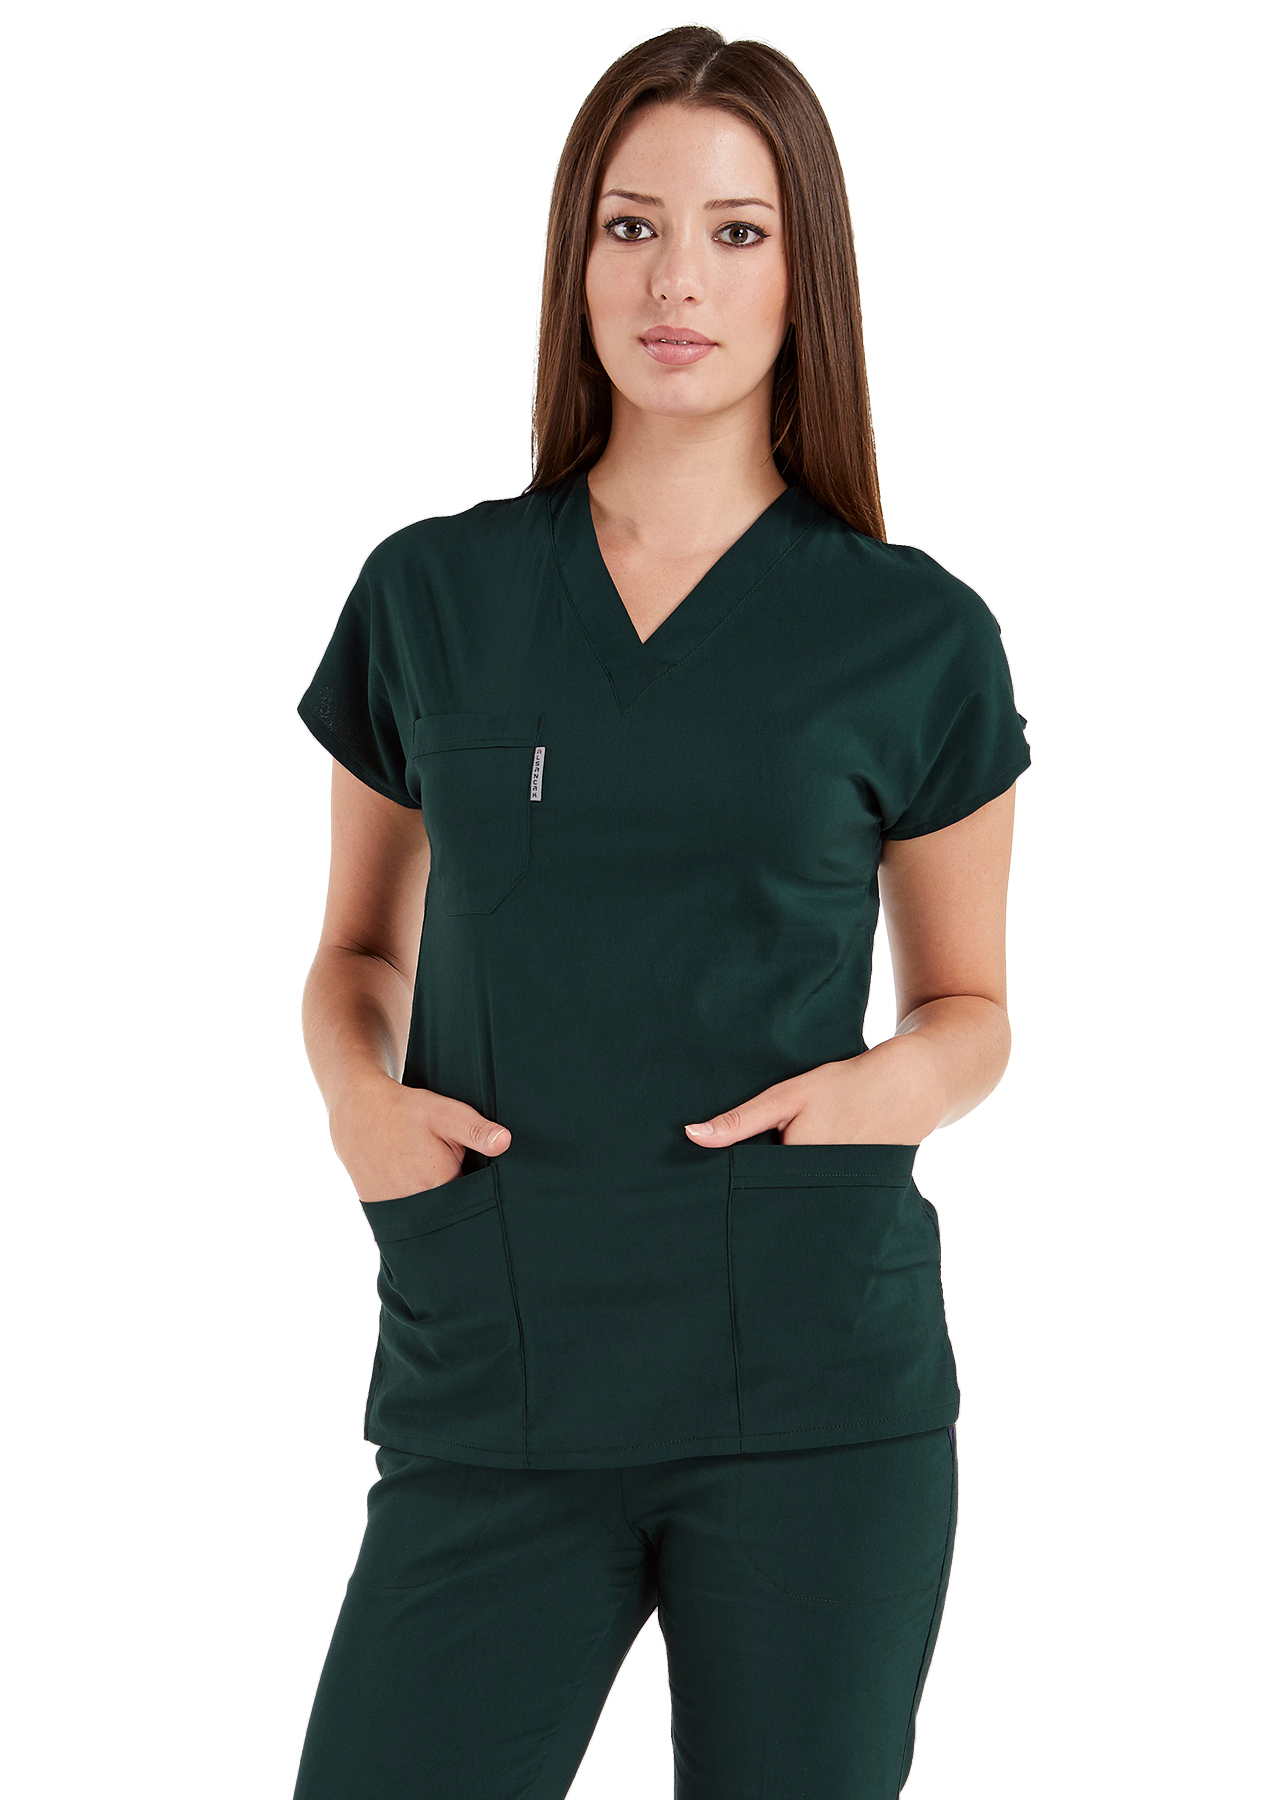 Ördekbaşı Yeşili Likralı İnce Scrubs Doktor Hemşire Forması Takımı